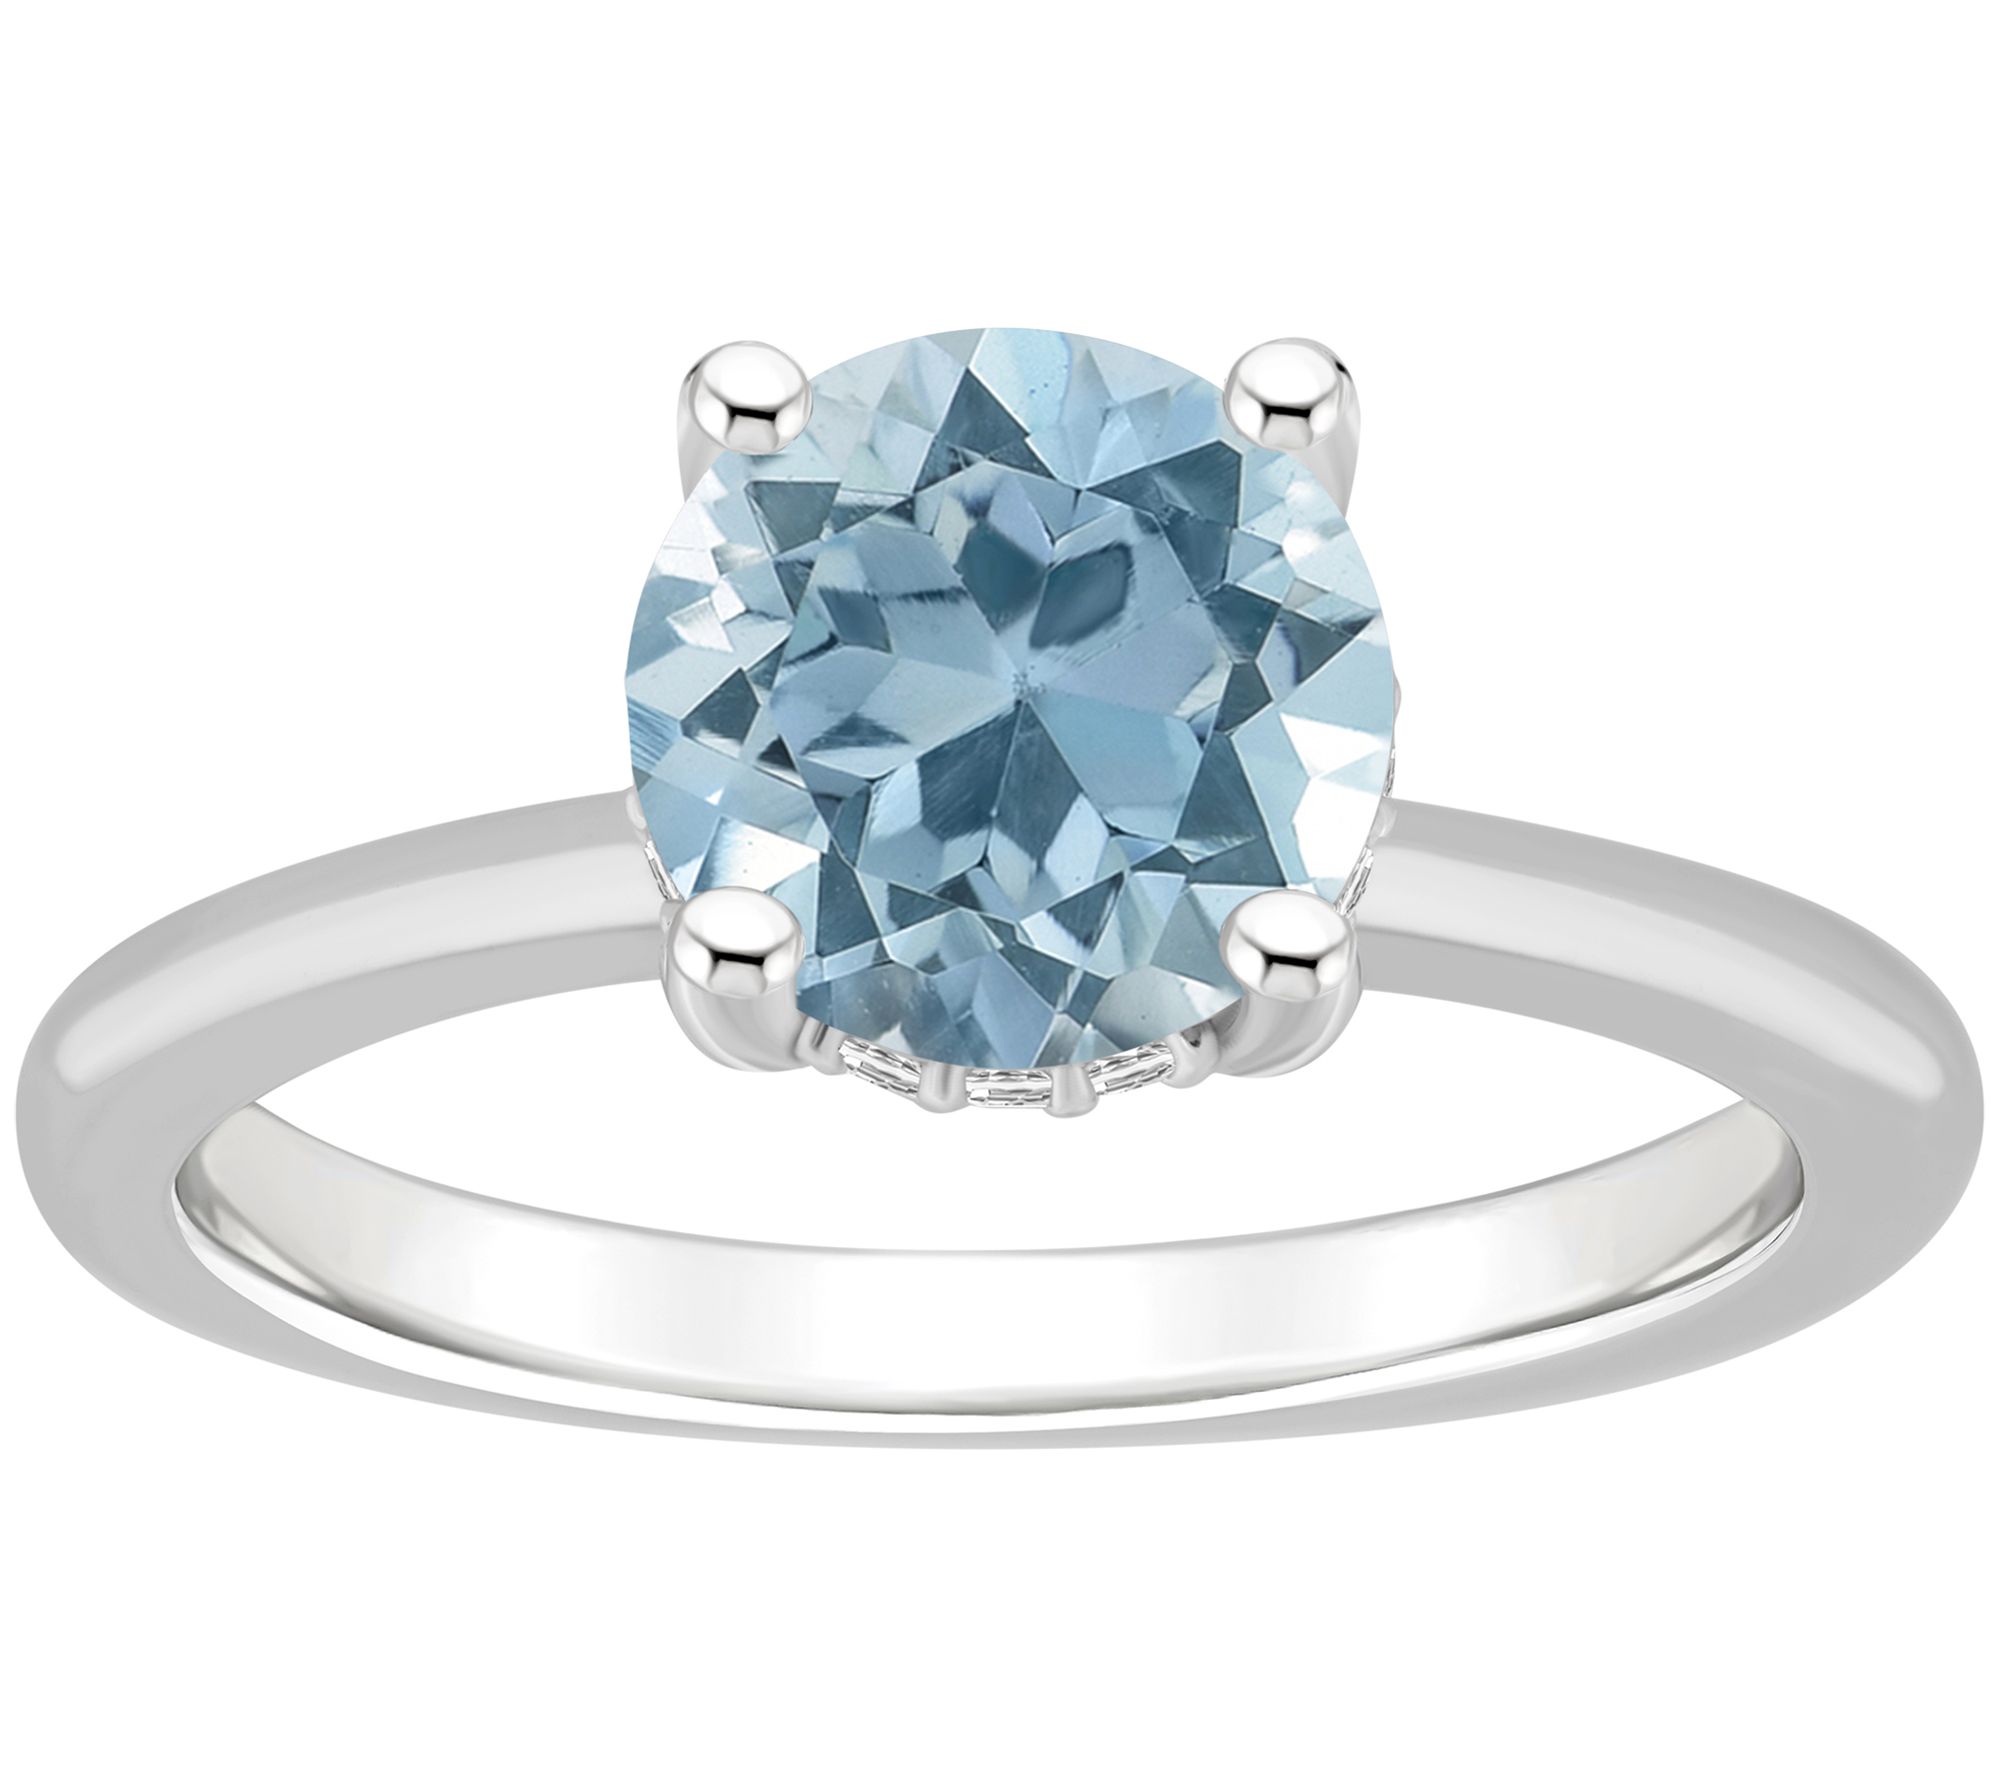 Affinity Gems R ound Gemstone & Diamond Galler y Ring - QVC.com